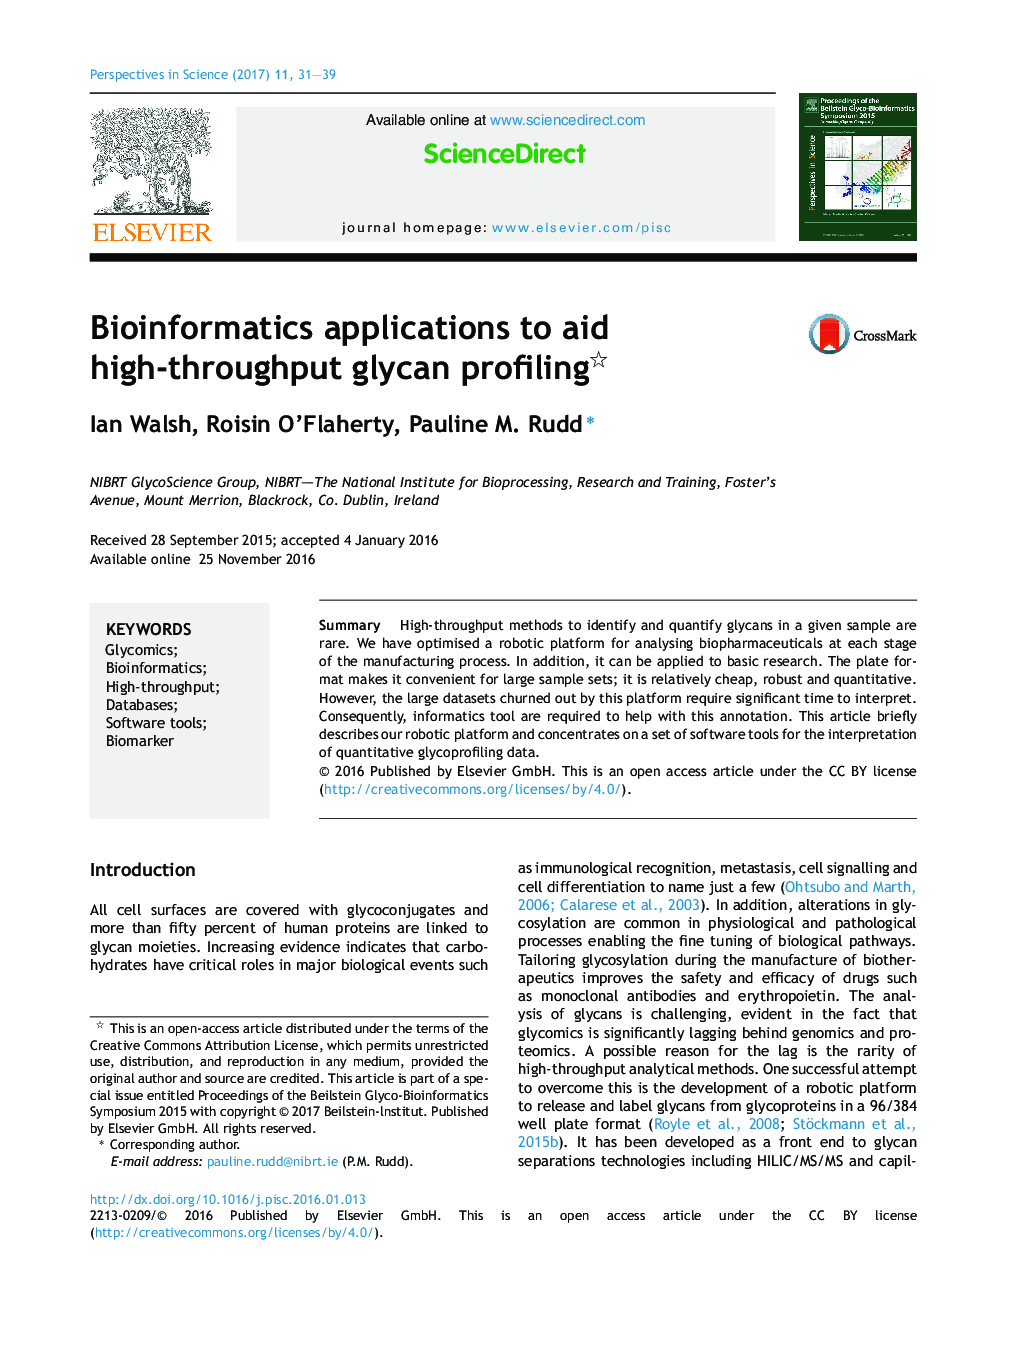 برنامه های کاربردی بیوانفورماتیک برای کمک به پروفیل سازی glycan high-throughput